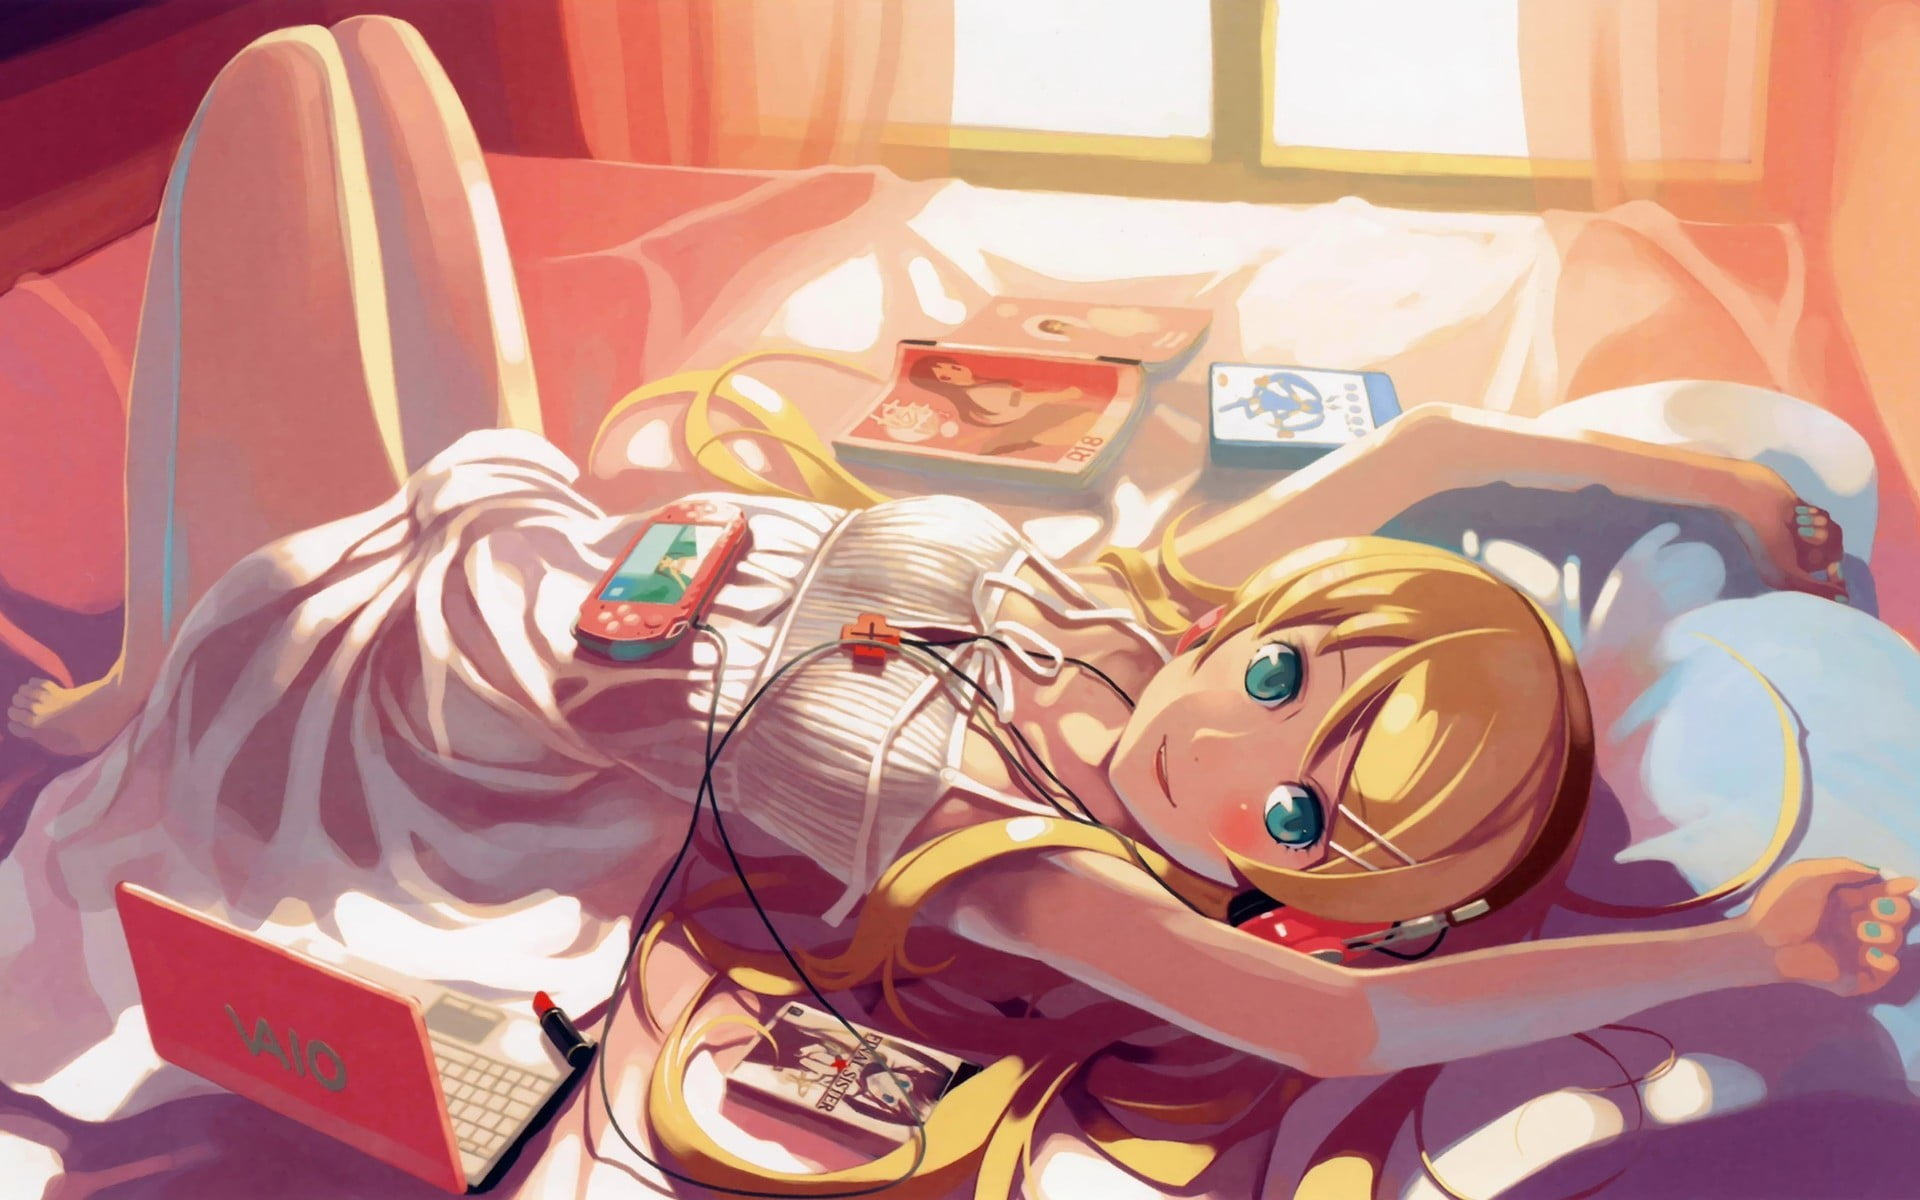 Wallpaper female anime character lying on bed wallpaper, women, anime girls